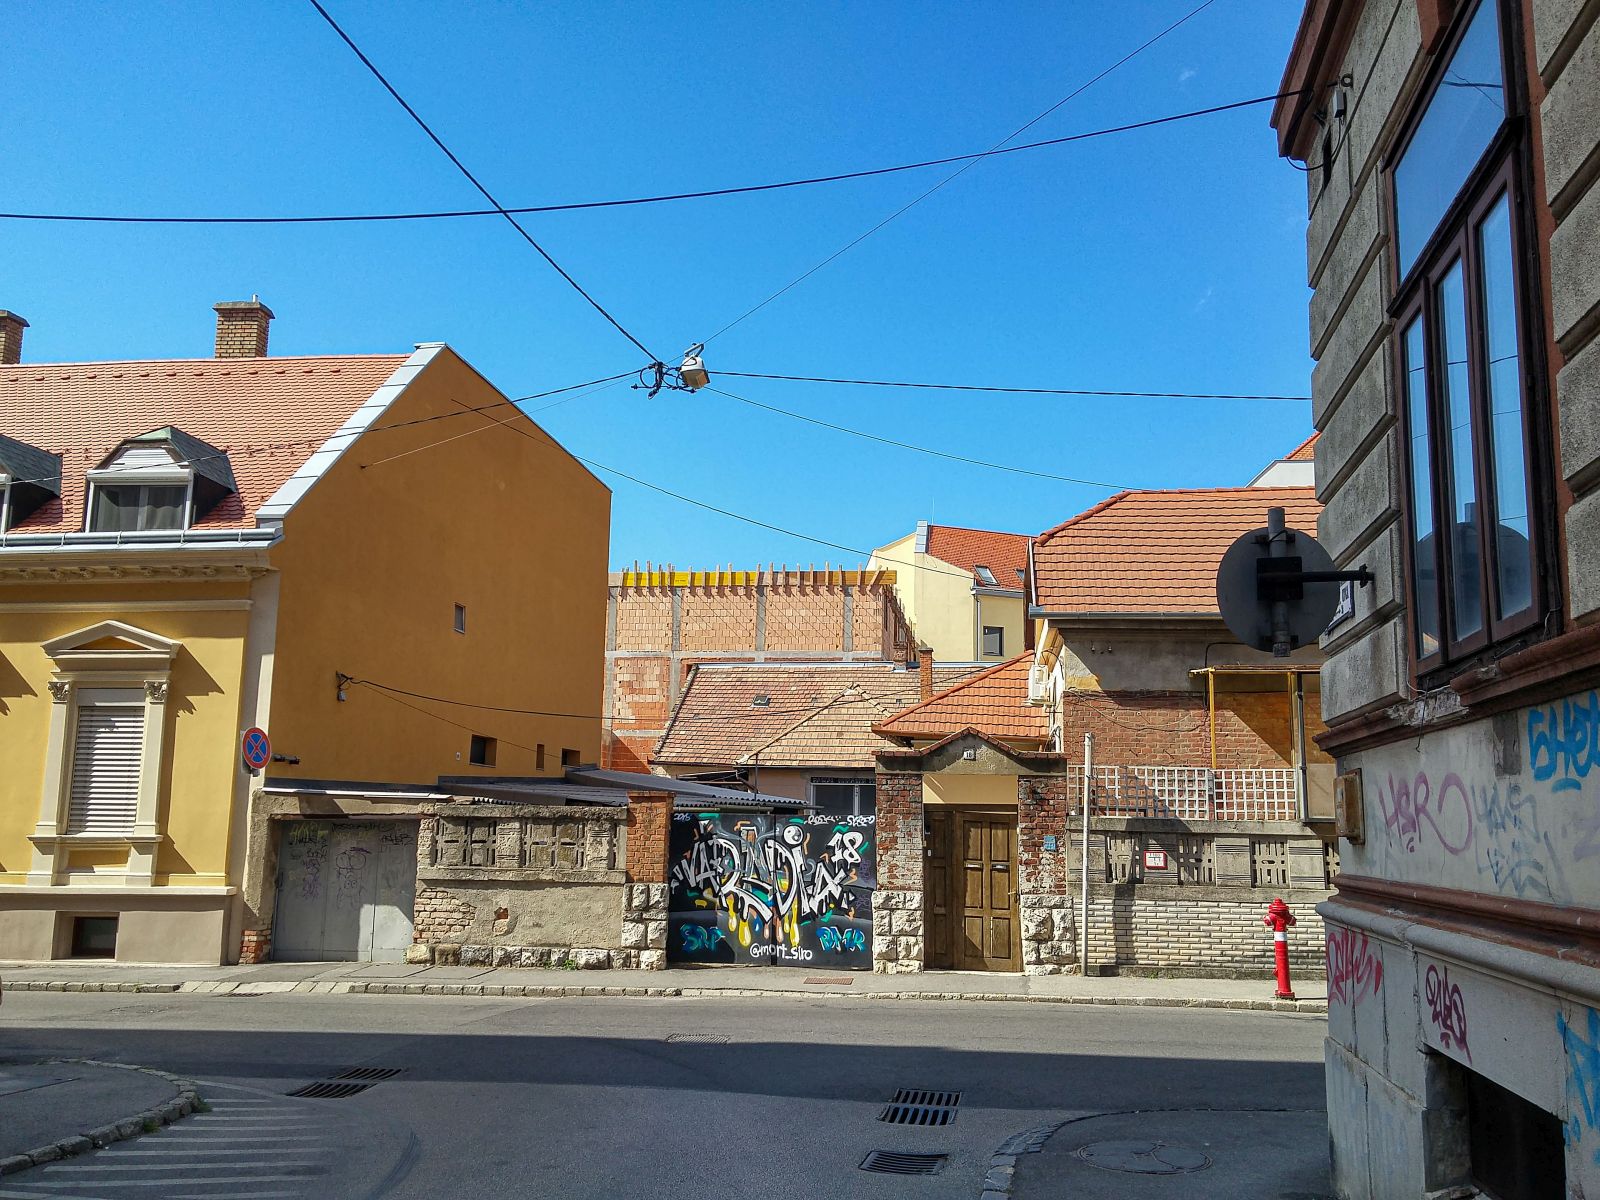 Historische Huser, Graffitis, Baustelle. Das Alles in der Innenstadt von Pcs, Ungarn. Foto: 09.2021